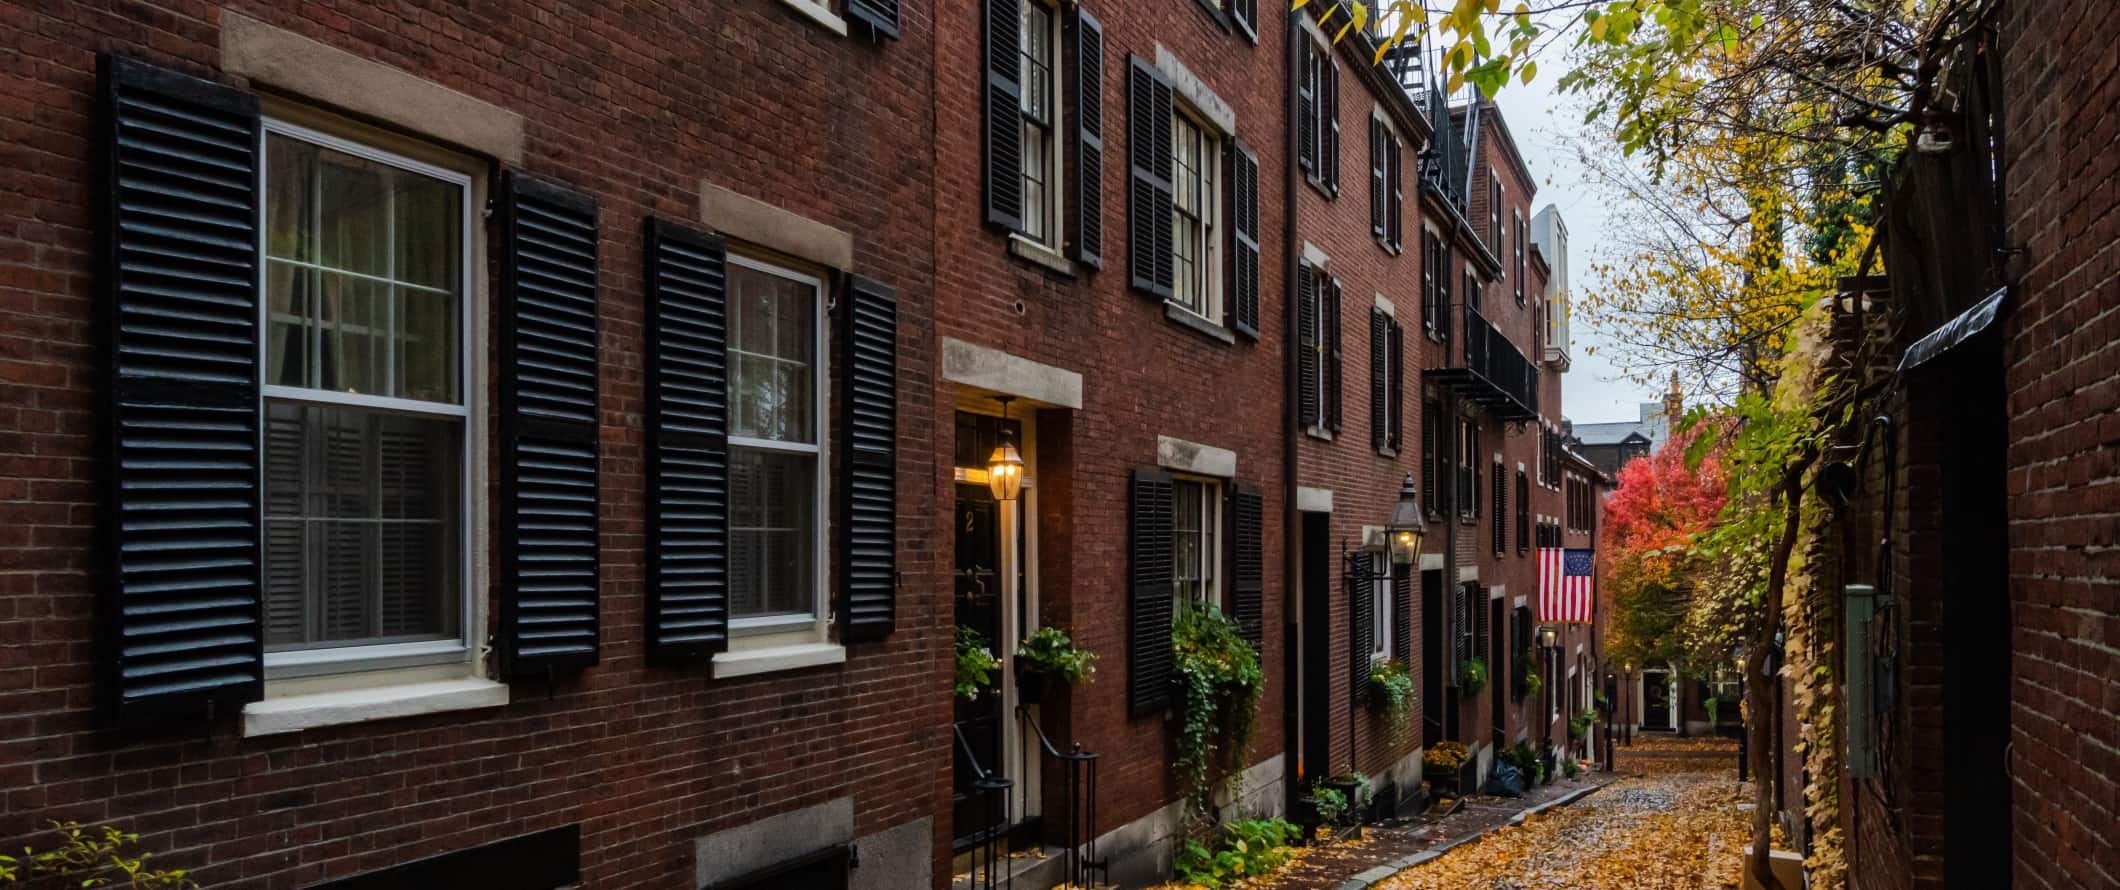 Historical Brick abriga persianas pretas no beco com folhas de laranja no chão em Boston, Massachusetts.